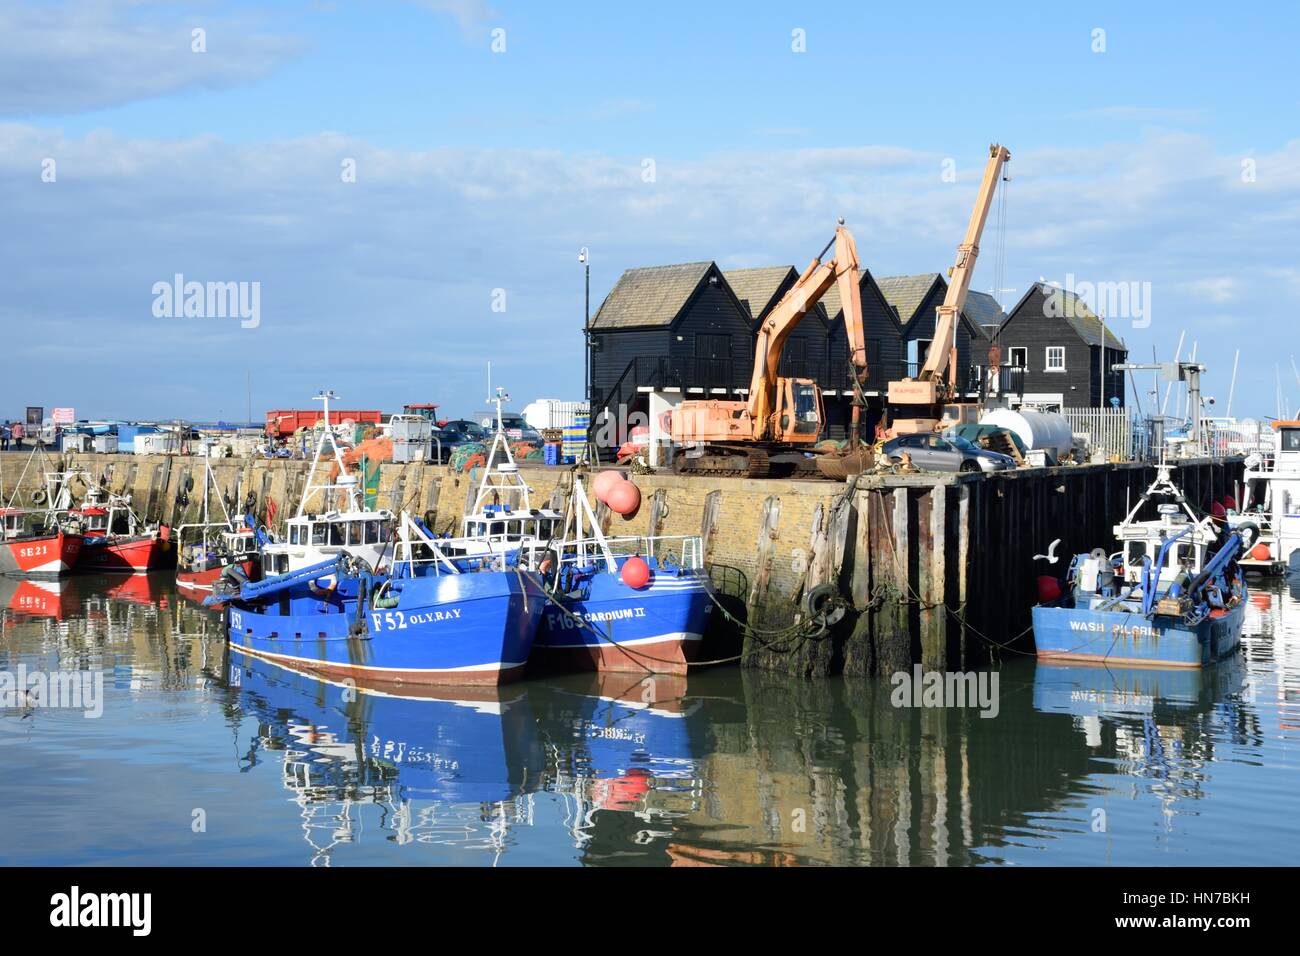 Whitstable, Regno Unito - 1 Ottobre 2016: barche da pesca a Whitstable Harbour con magazzino in background Foto Stock